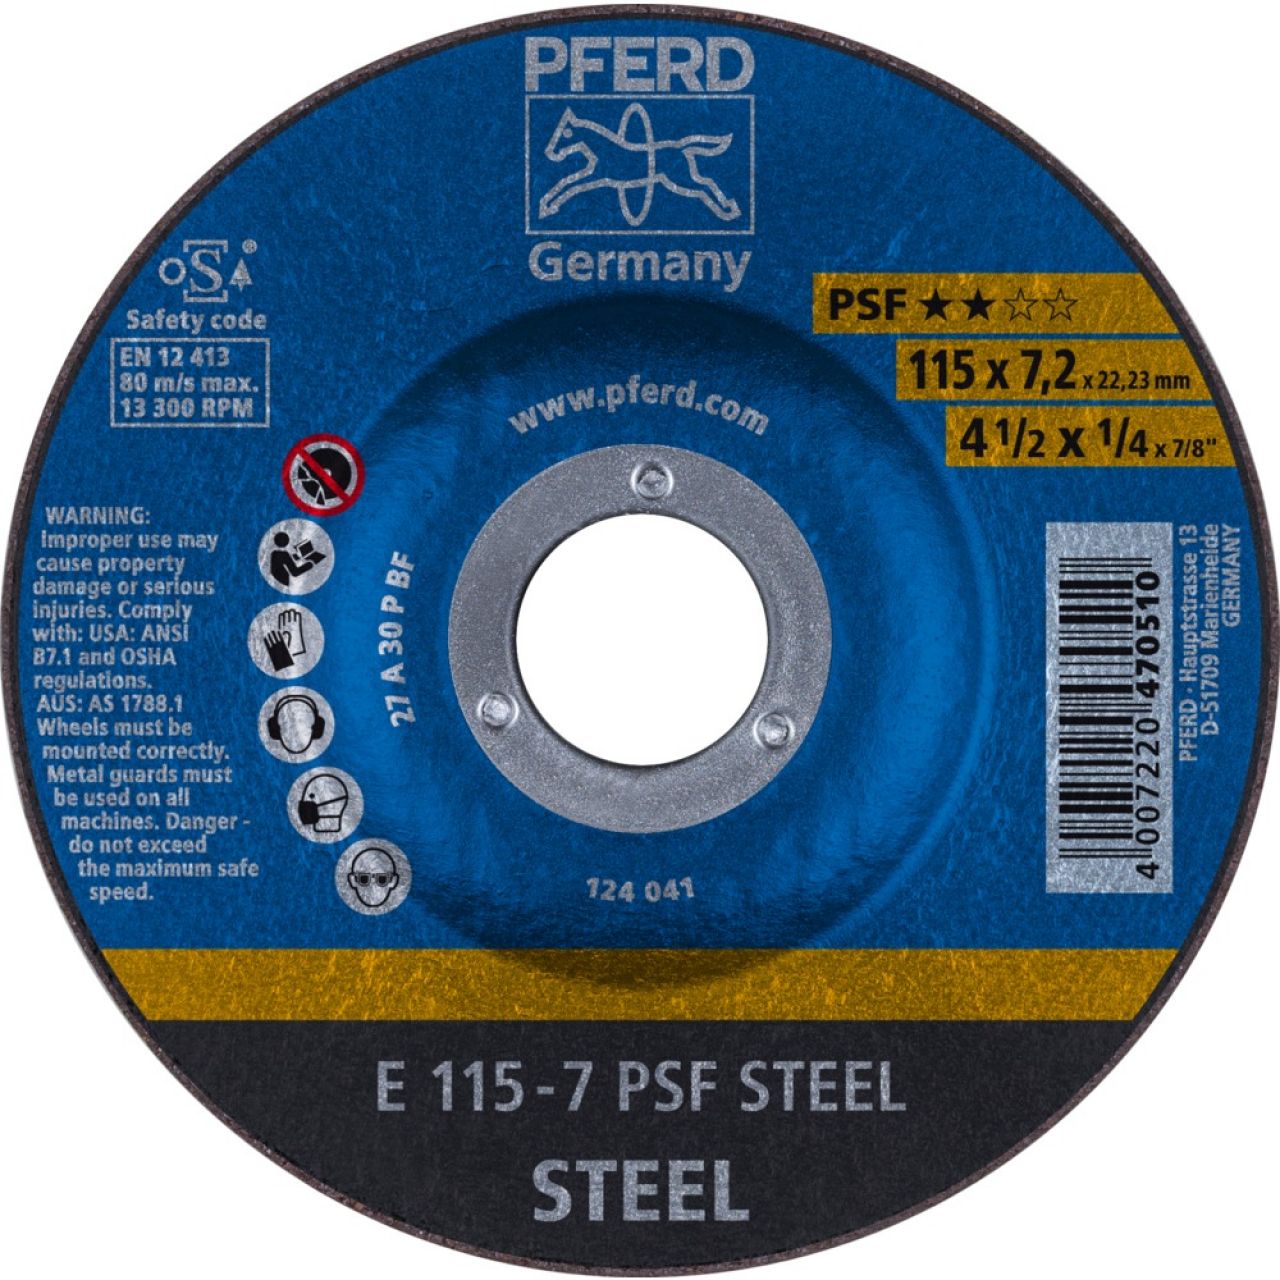 Discos de desbaste - Línea PSF STEEL (acero)